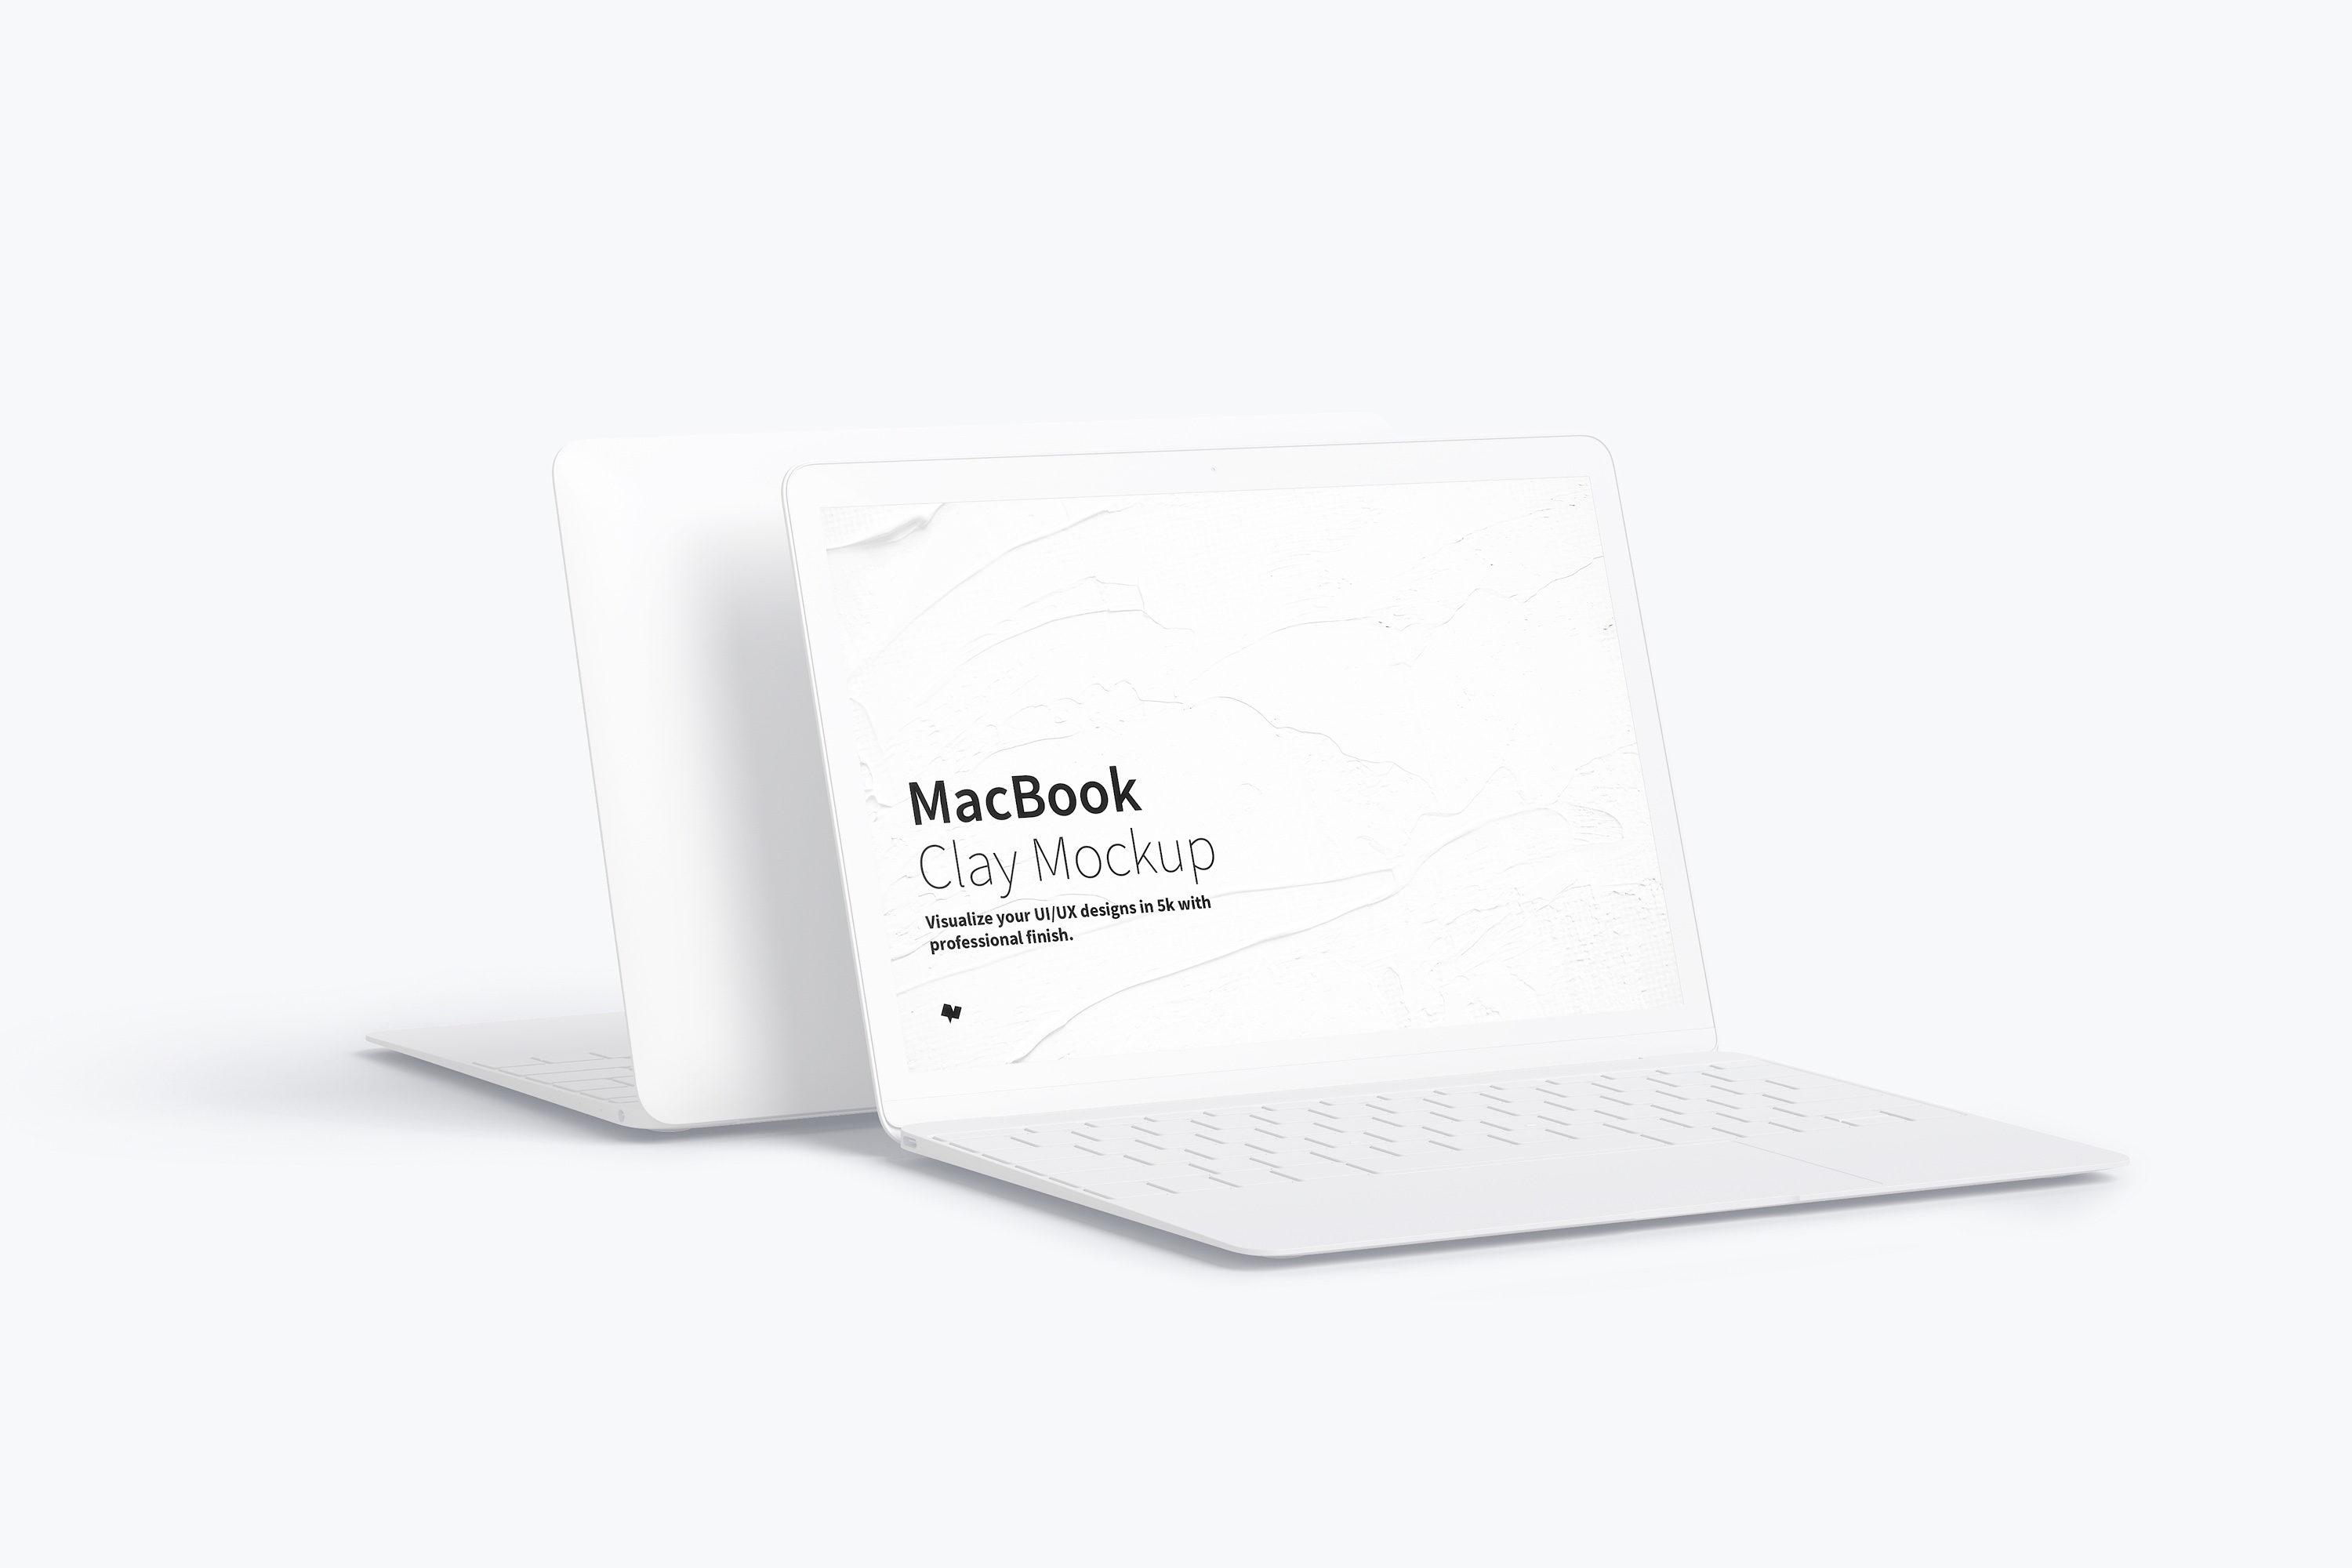 MacBook笔记本电脑屏幕预览图样机模板 Clay MacBook Mockup插图